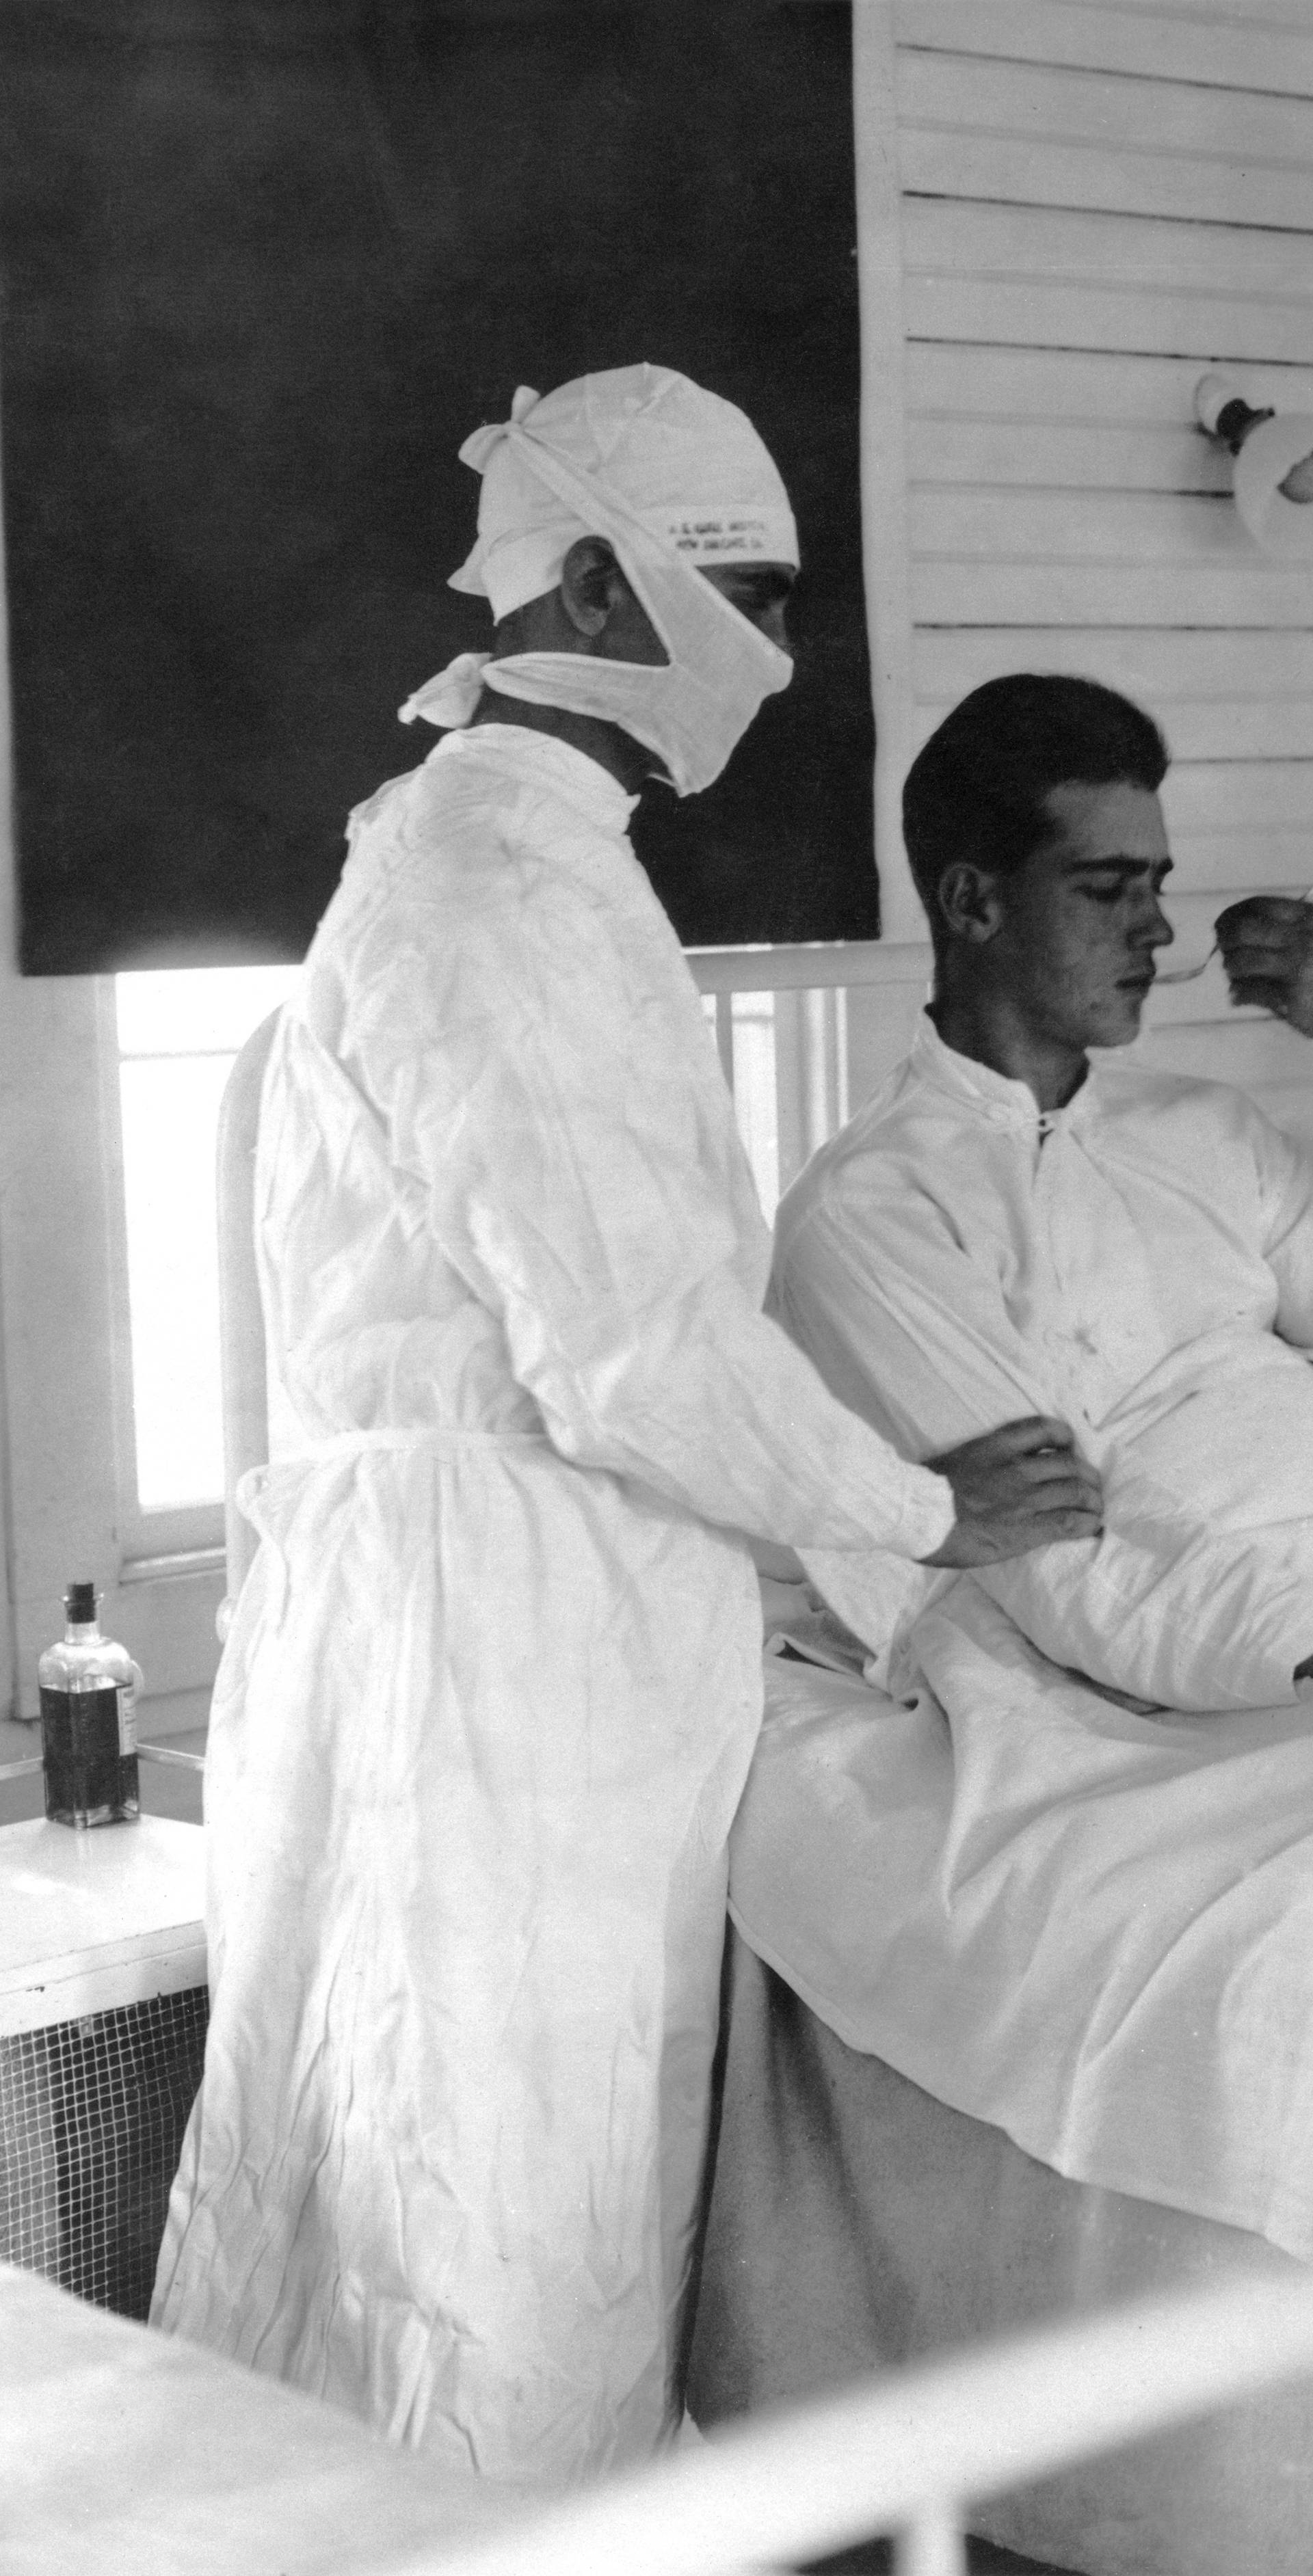 Spanish flu nursing ward, 1918